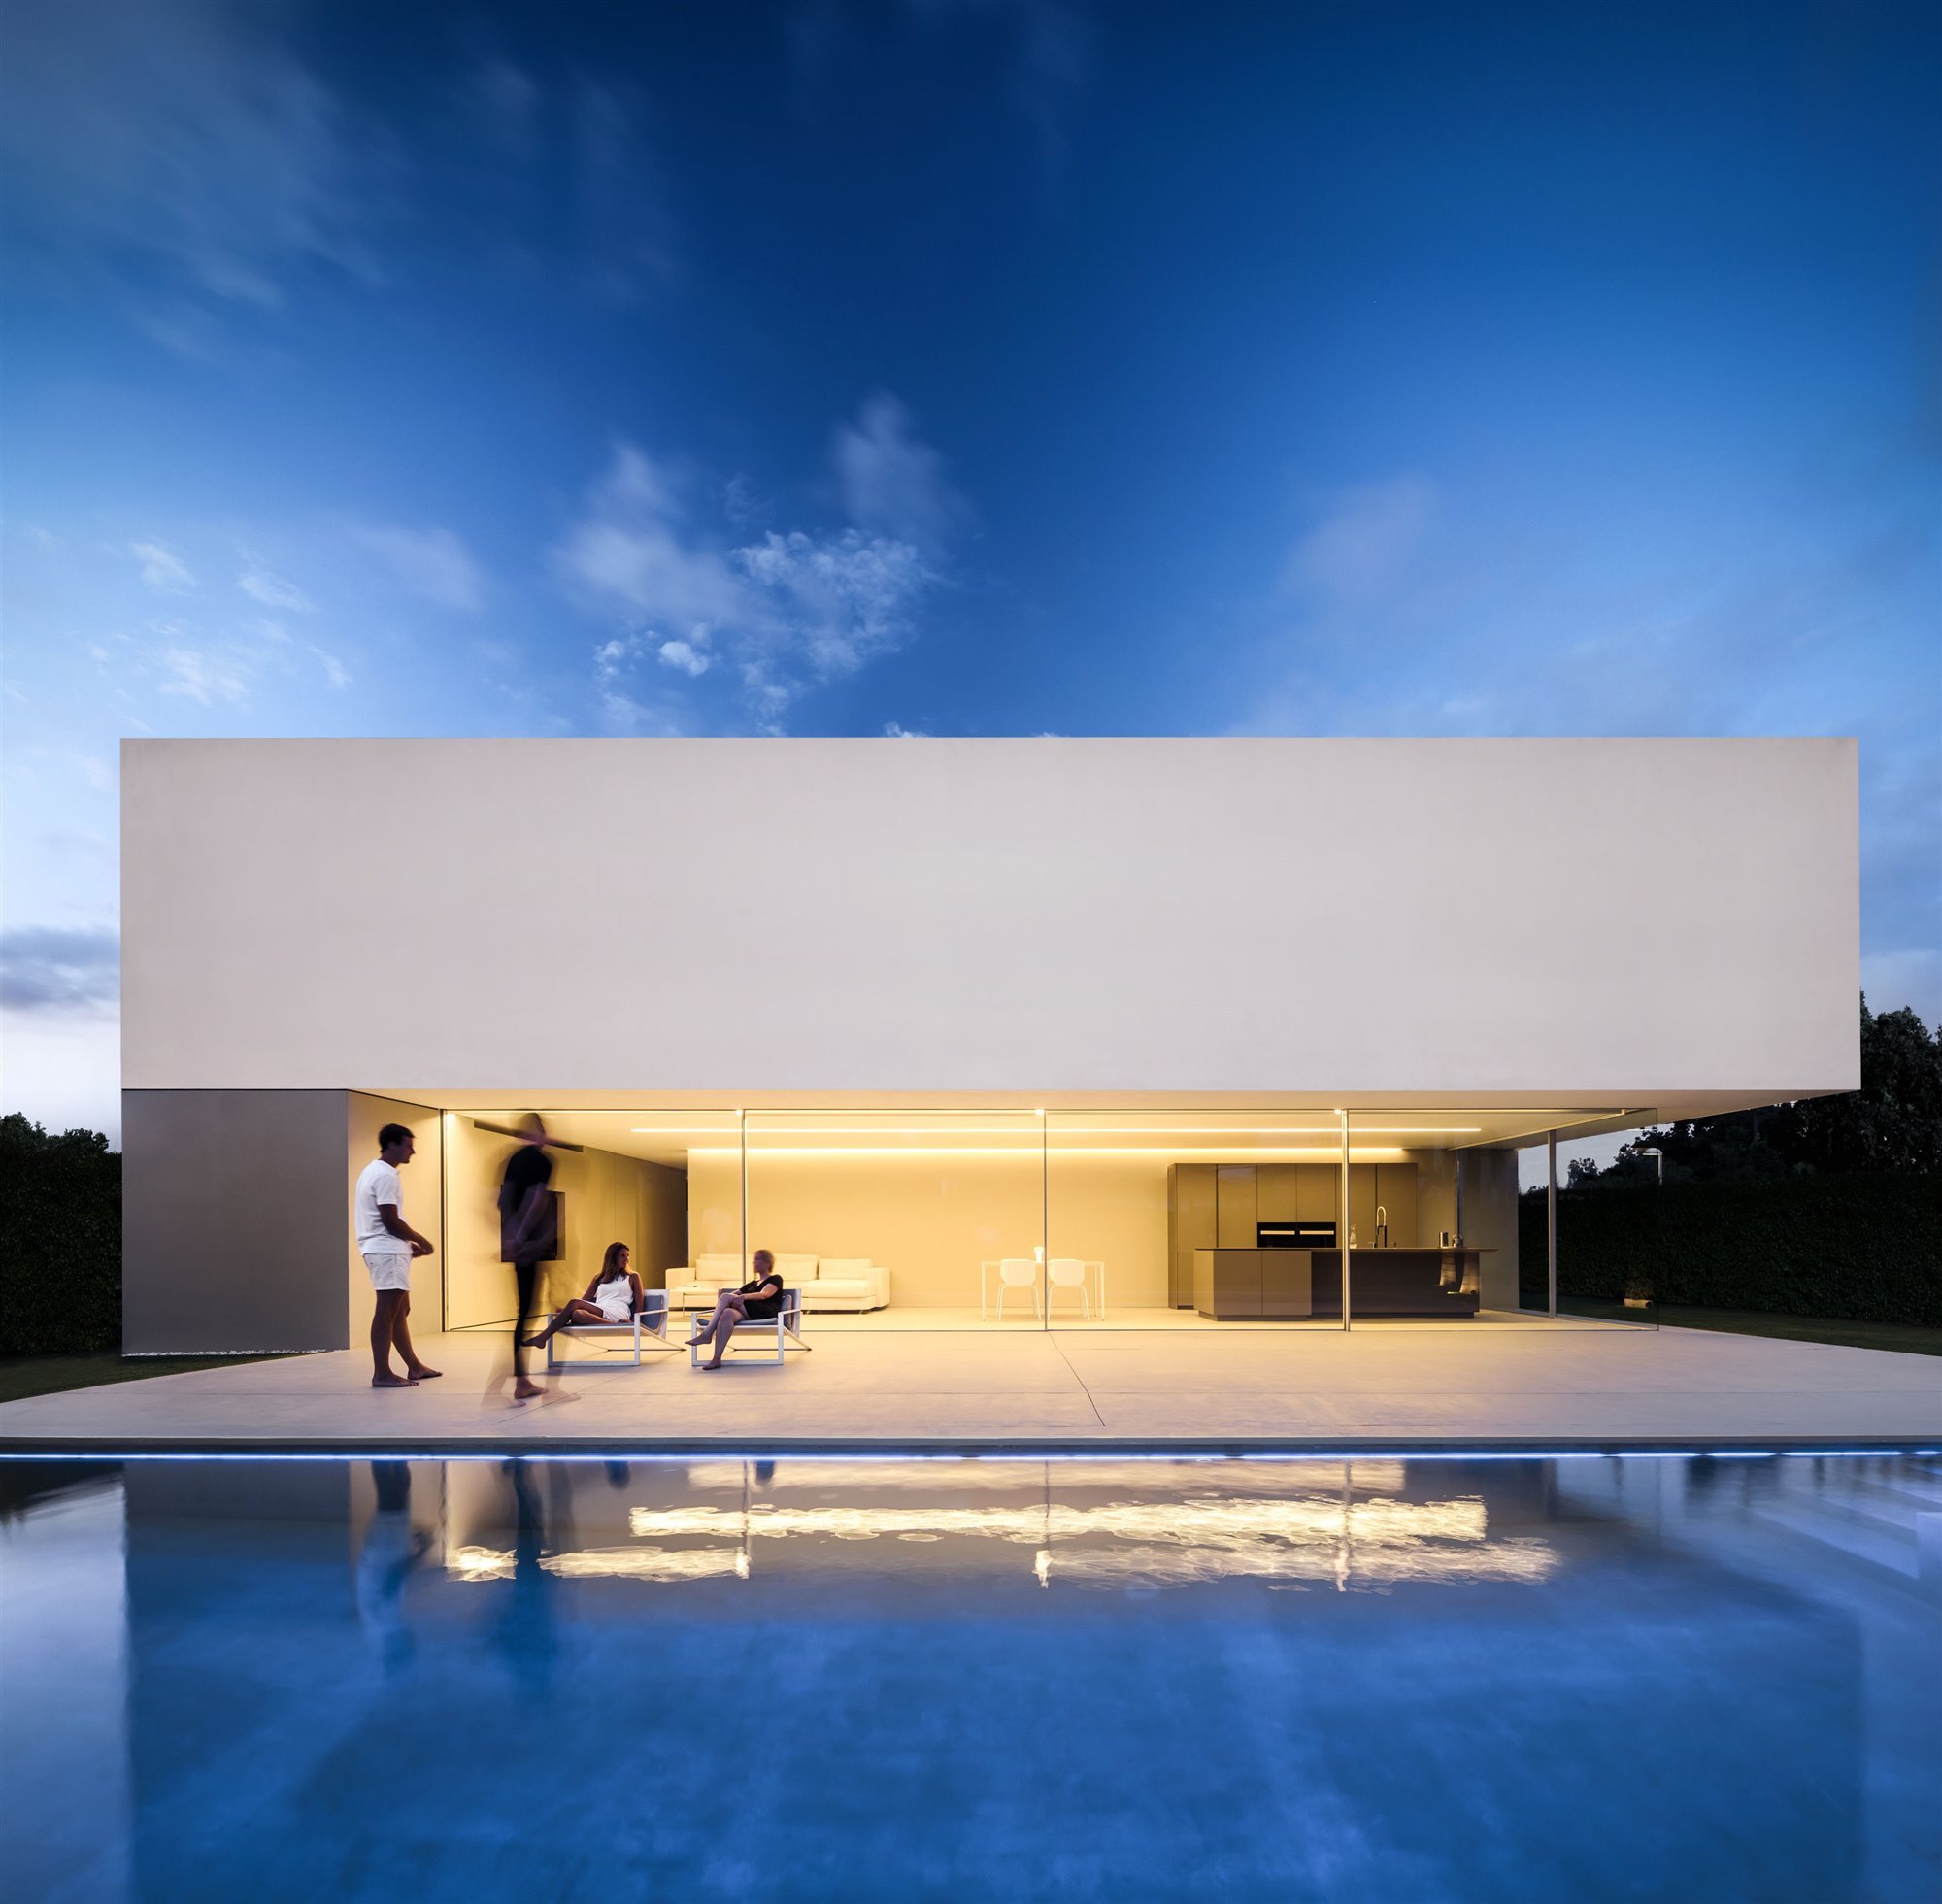 Fachada casa blanca moderna con una piscina vista de noche